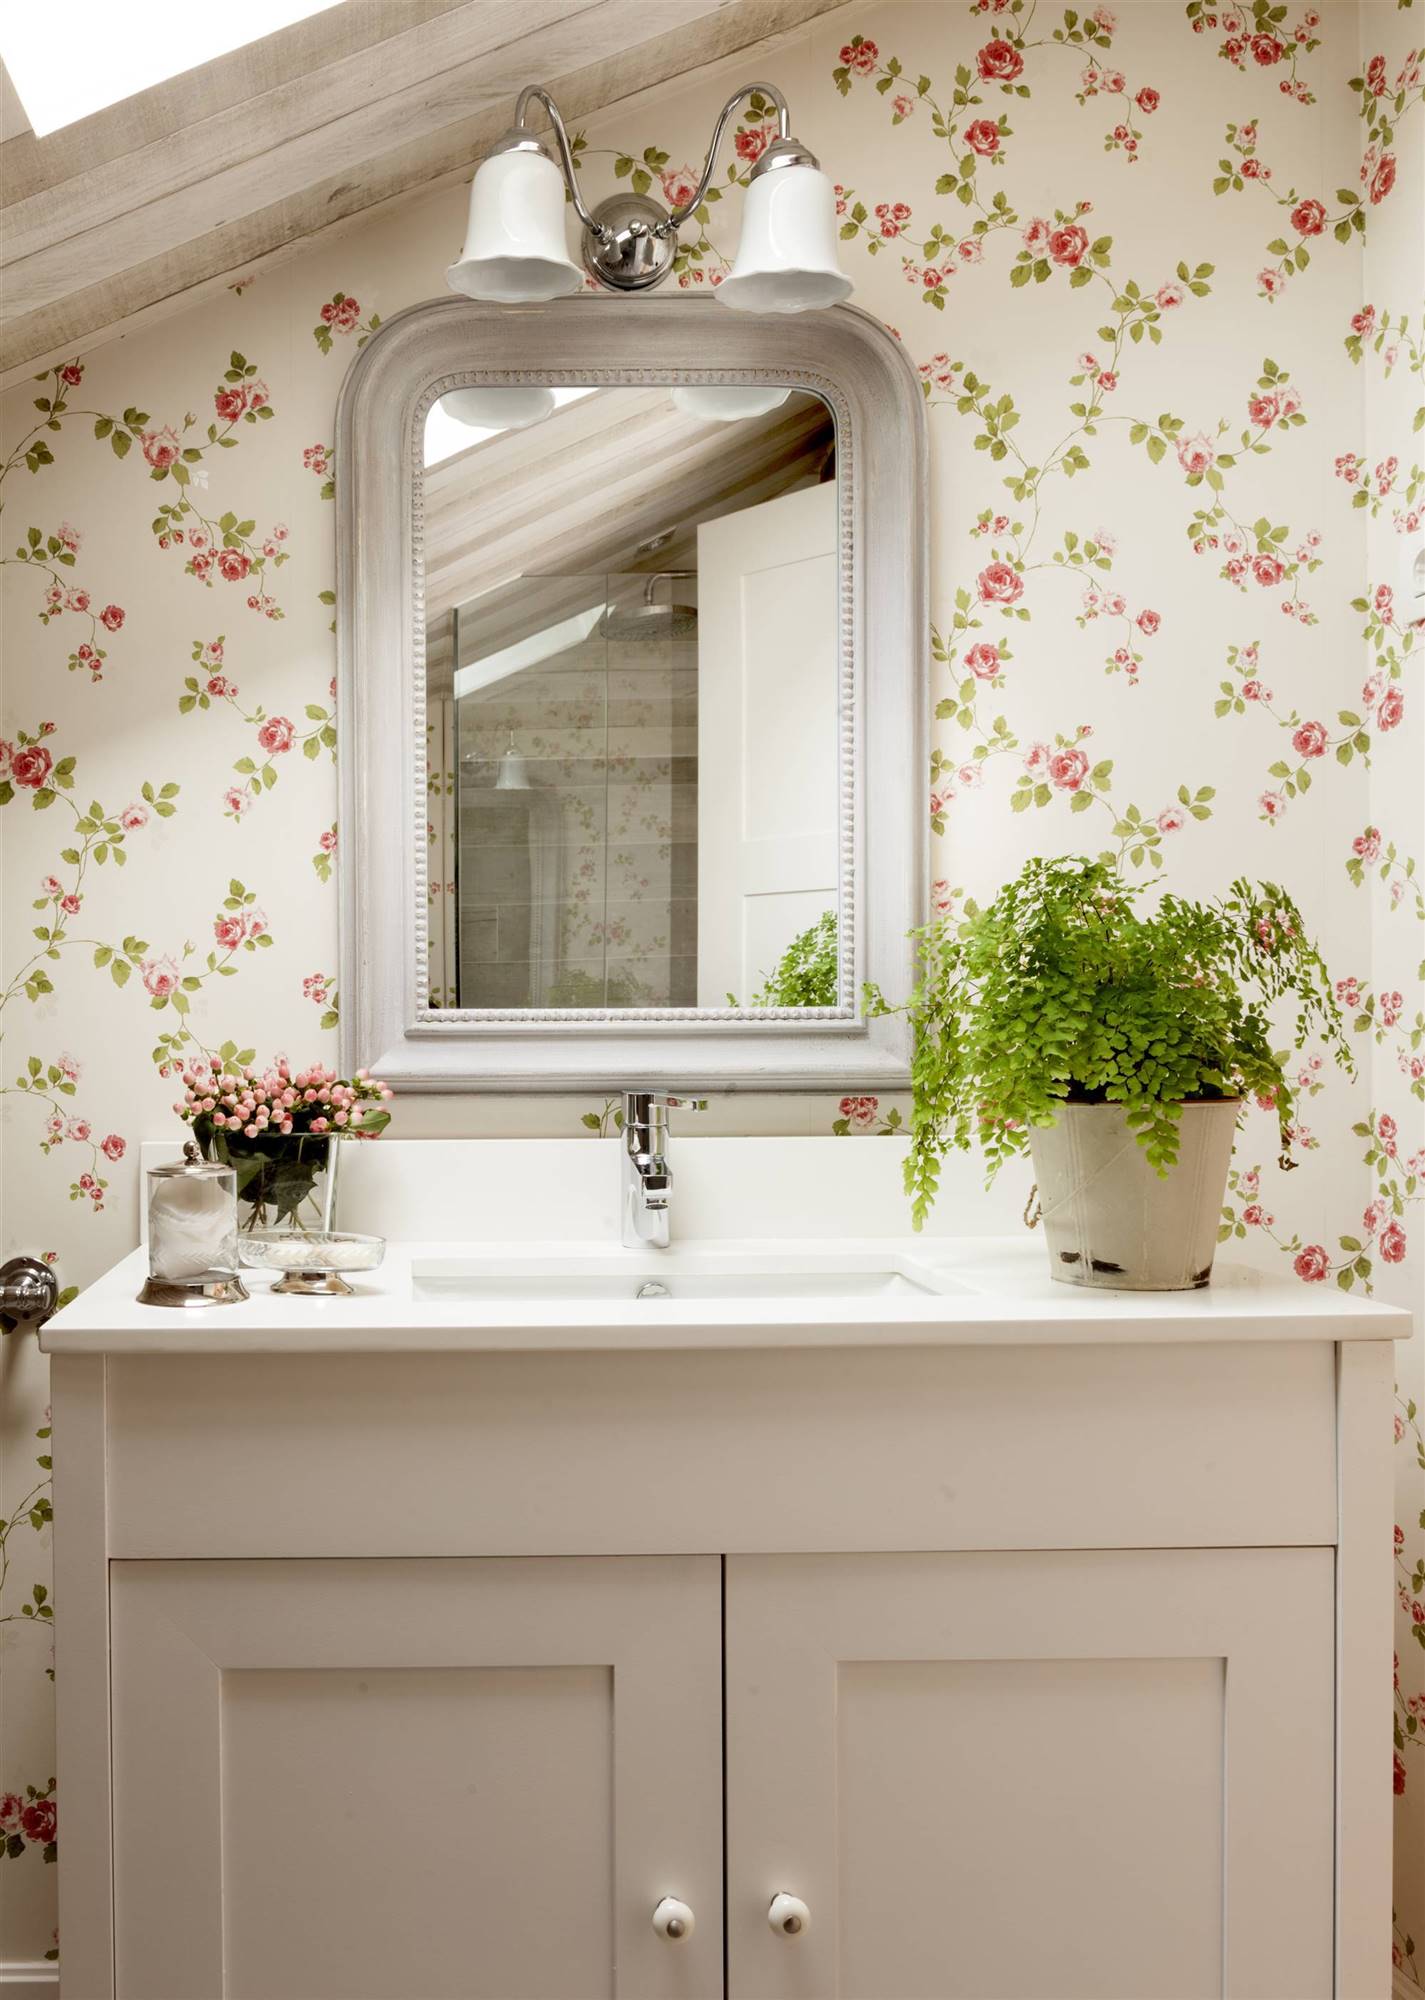 Baño abuhardillado y papel pintado floral. 